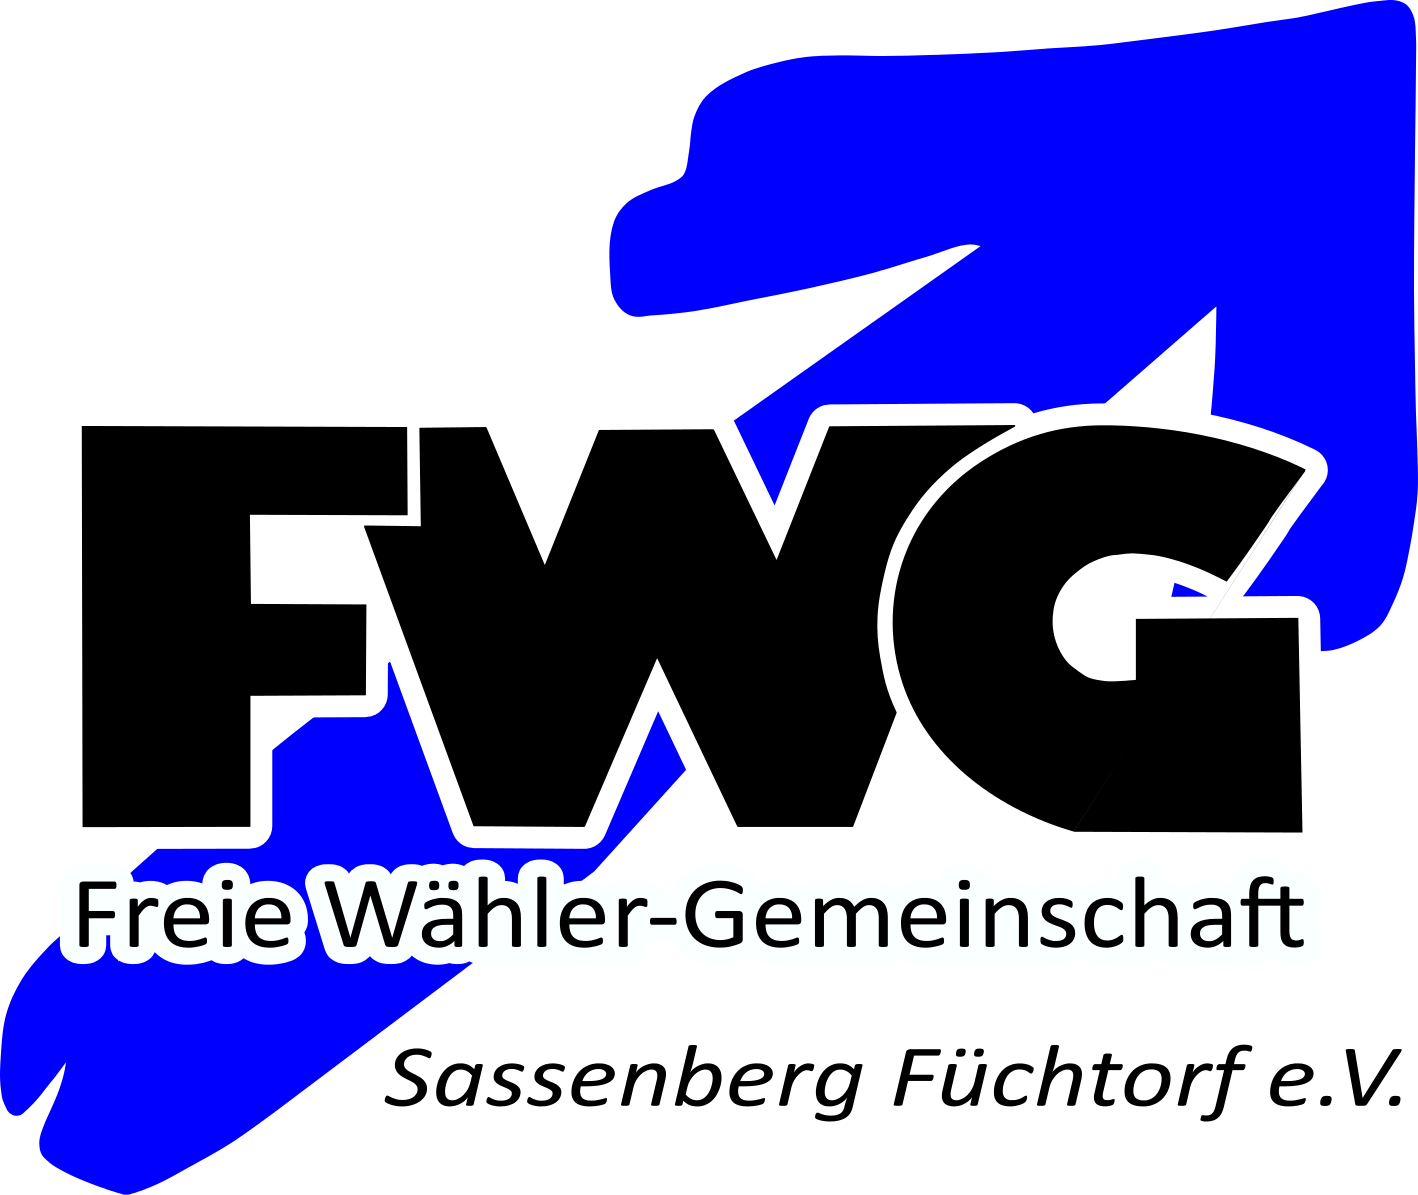 FWG beantragt weitere Öffnungszeiten für Rathaus